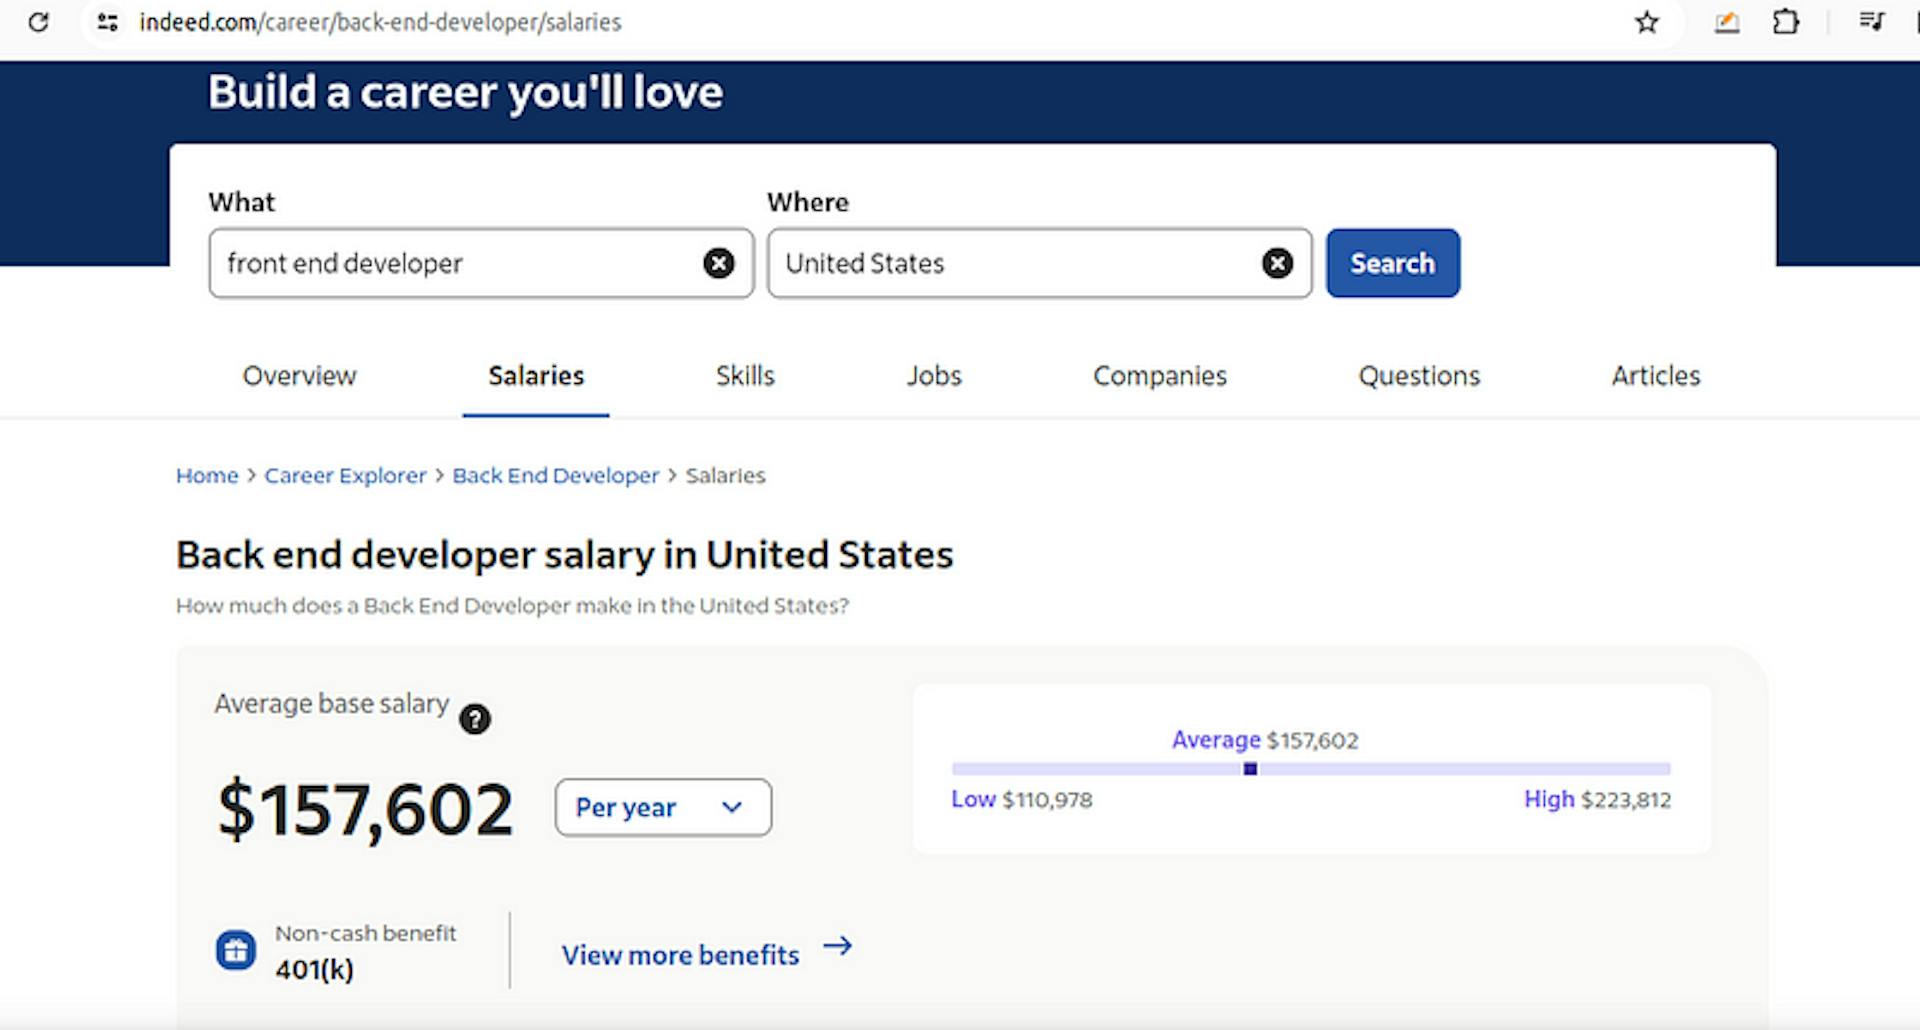 Back end developer avg salary in the U.S